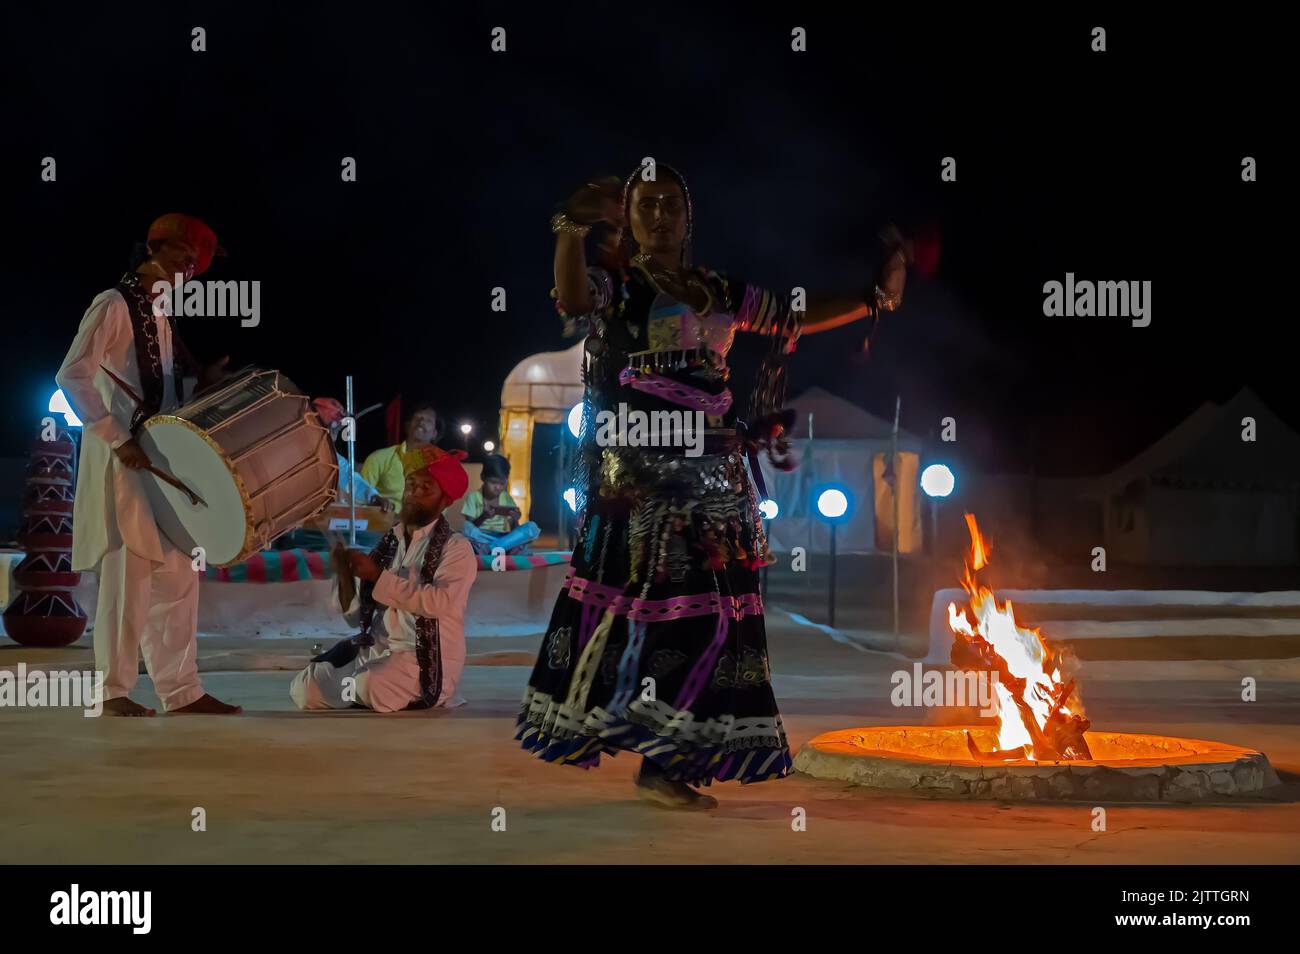 Désert de Thar, Rajasthan, Inde - 15 octobre 2019 : danseuse rajasthani dansant, vêtue de robe culturelle du Rajasthan, la nuit. Banque D'Images